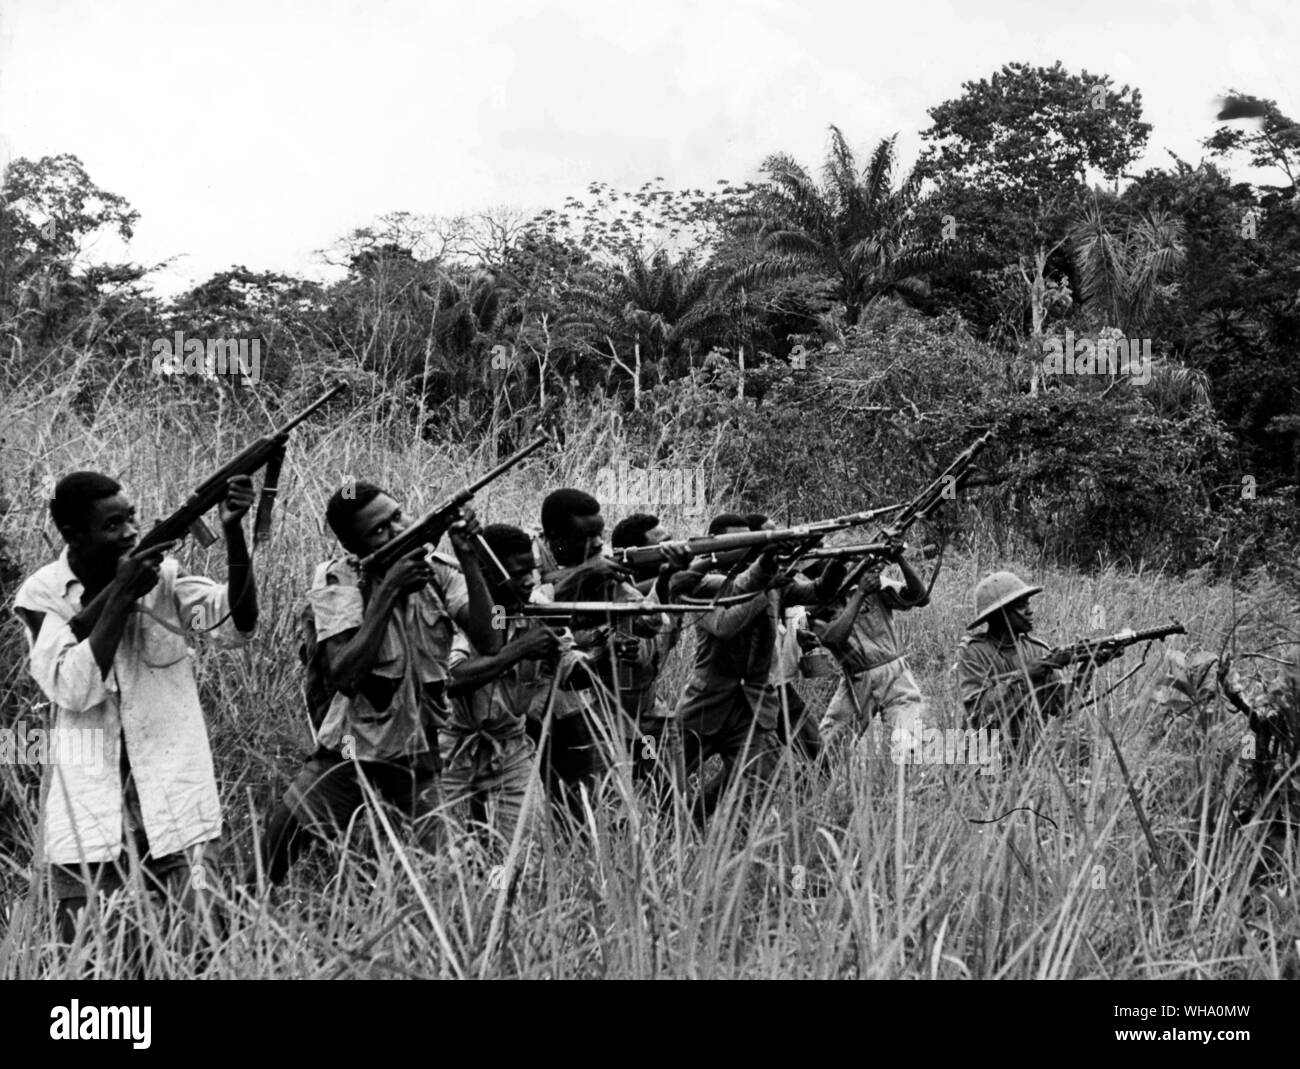 Angola Rebellen zu kämpfen. Die Hälfte im hohen Elefantengras versteckt, eine Patrouille stolz zeigen, wie effizient sie ihre Waffen umgehen kann. Stockfoto